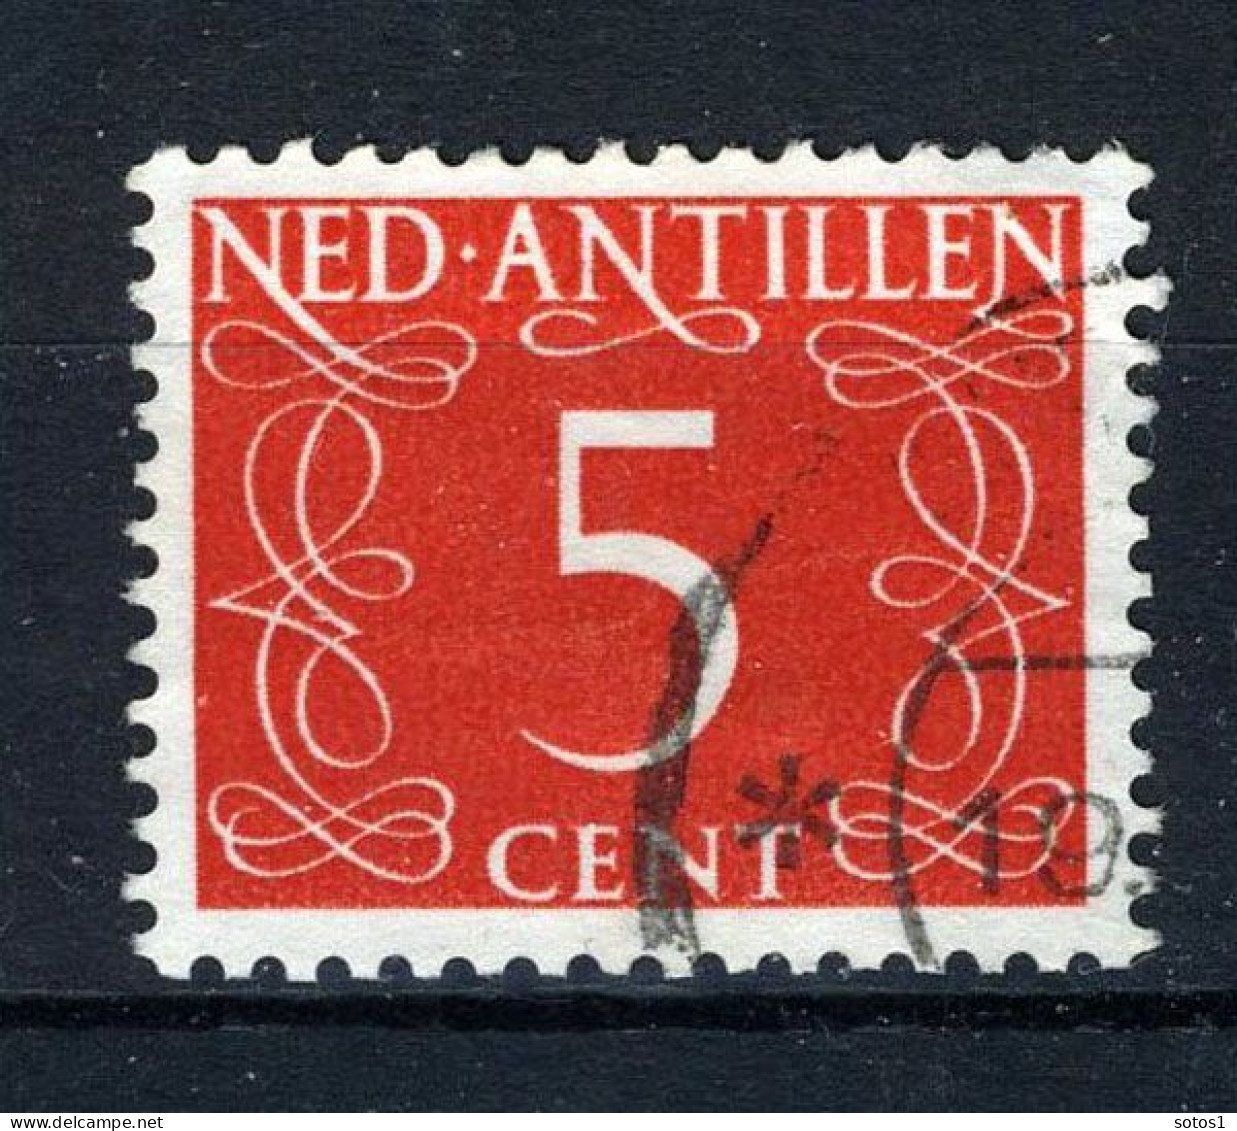 NL. ANTILLEN 217 Gestempeld 1950 - Cijfer. - Curacao, Netherlands Antilles, Aruba